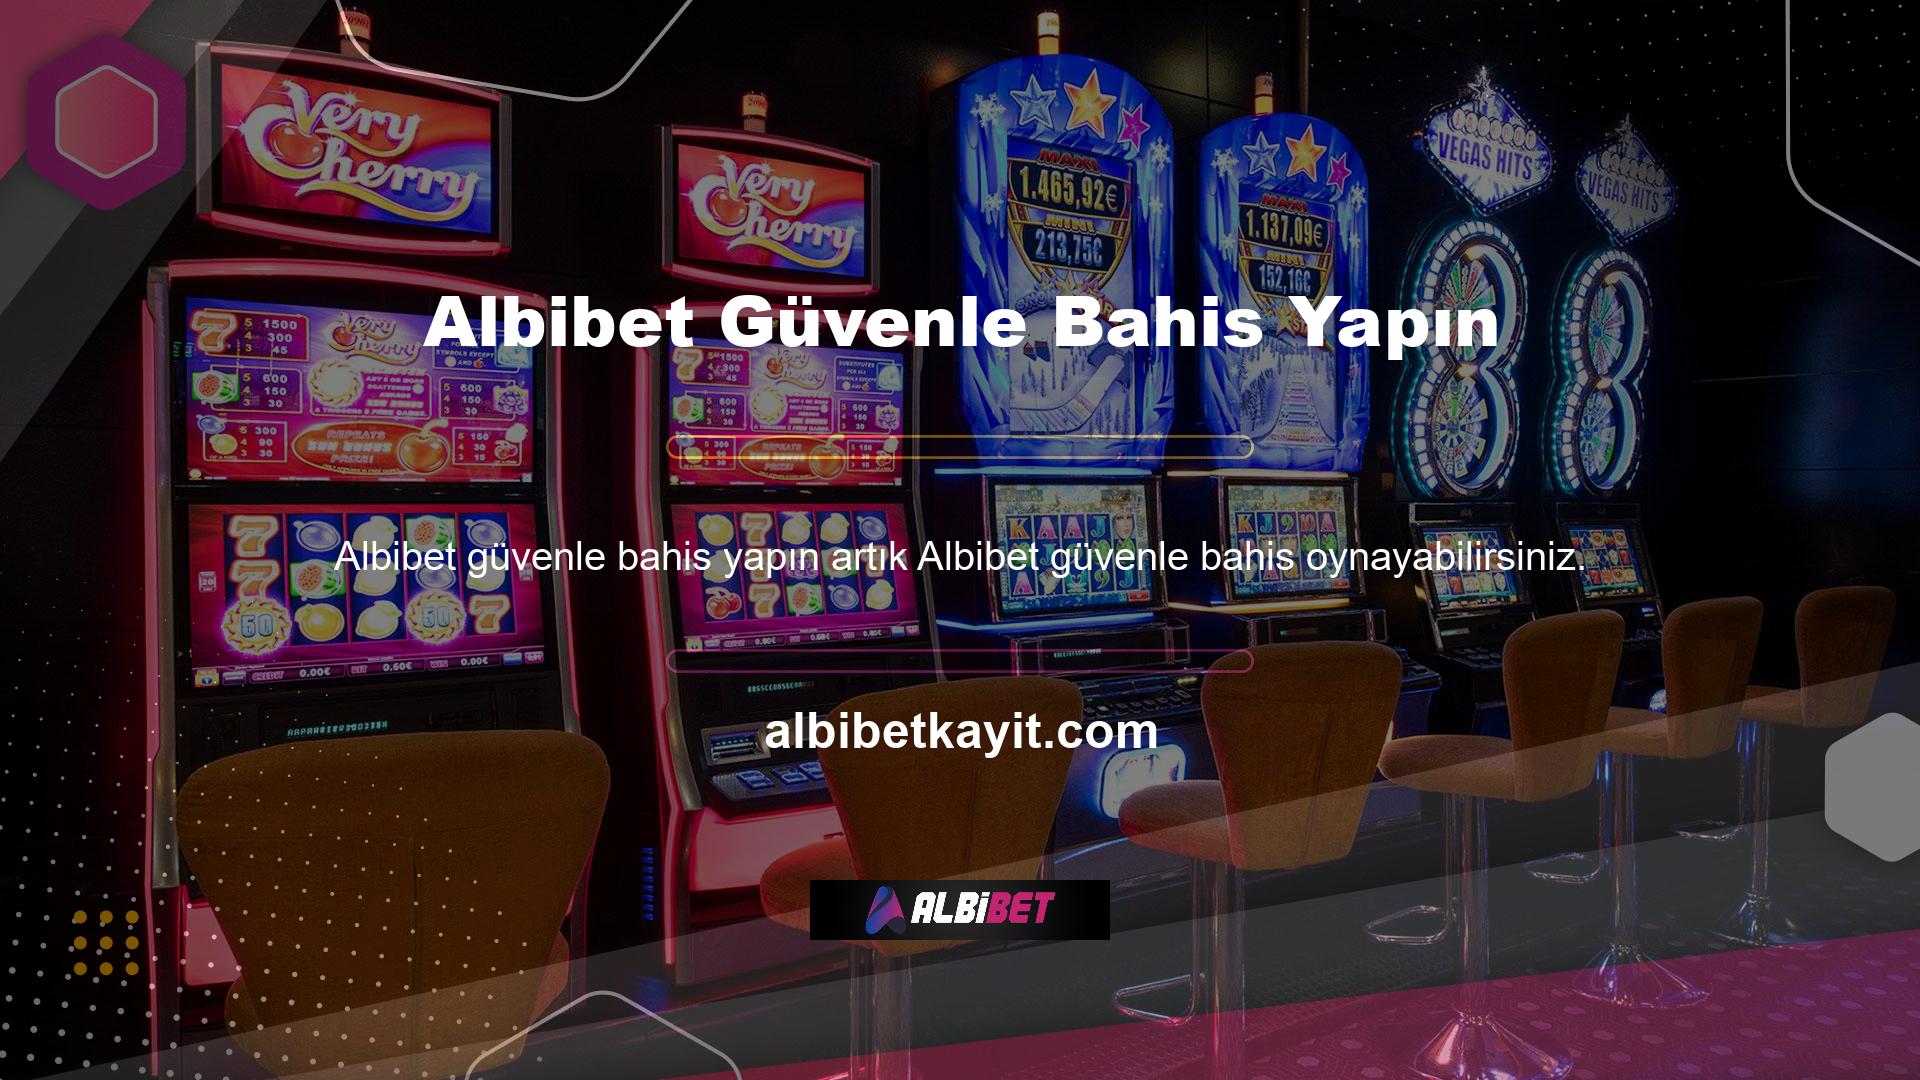 Albibet bu fırsatı uzun süredir Türk canlı casino ve bahisçilere sunmakta ve alanında lider konumunu korumaktadır